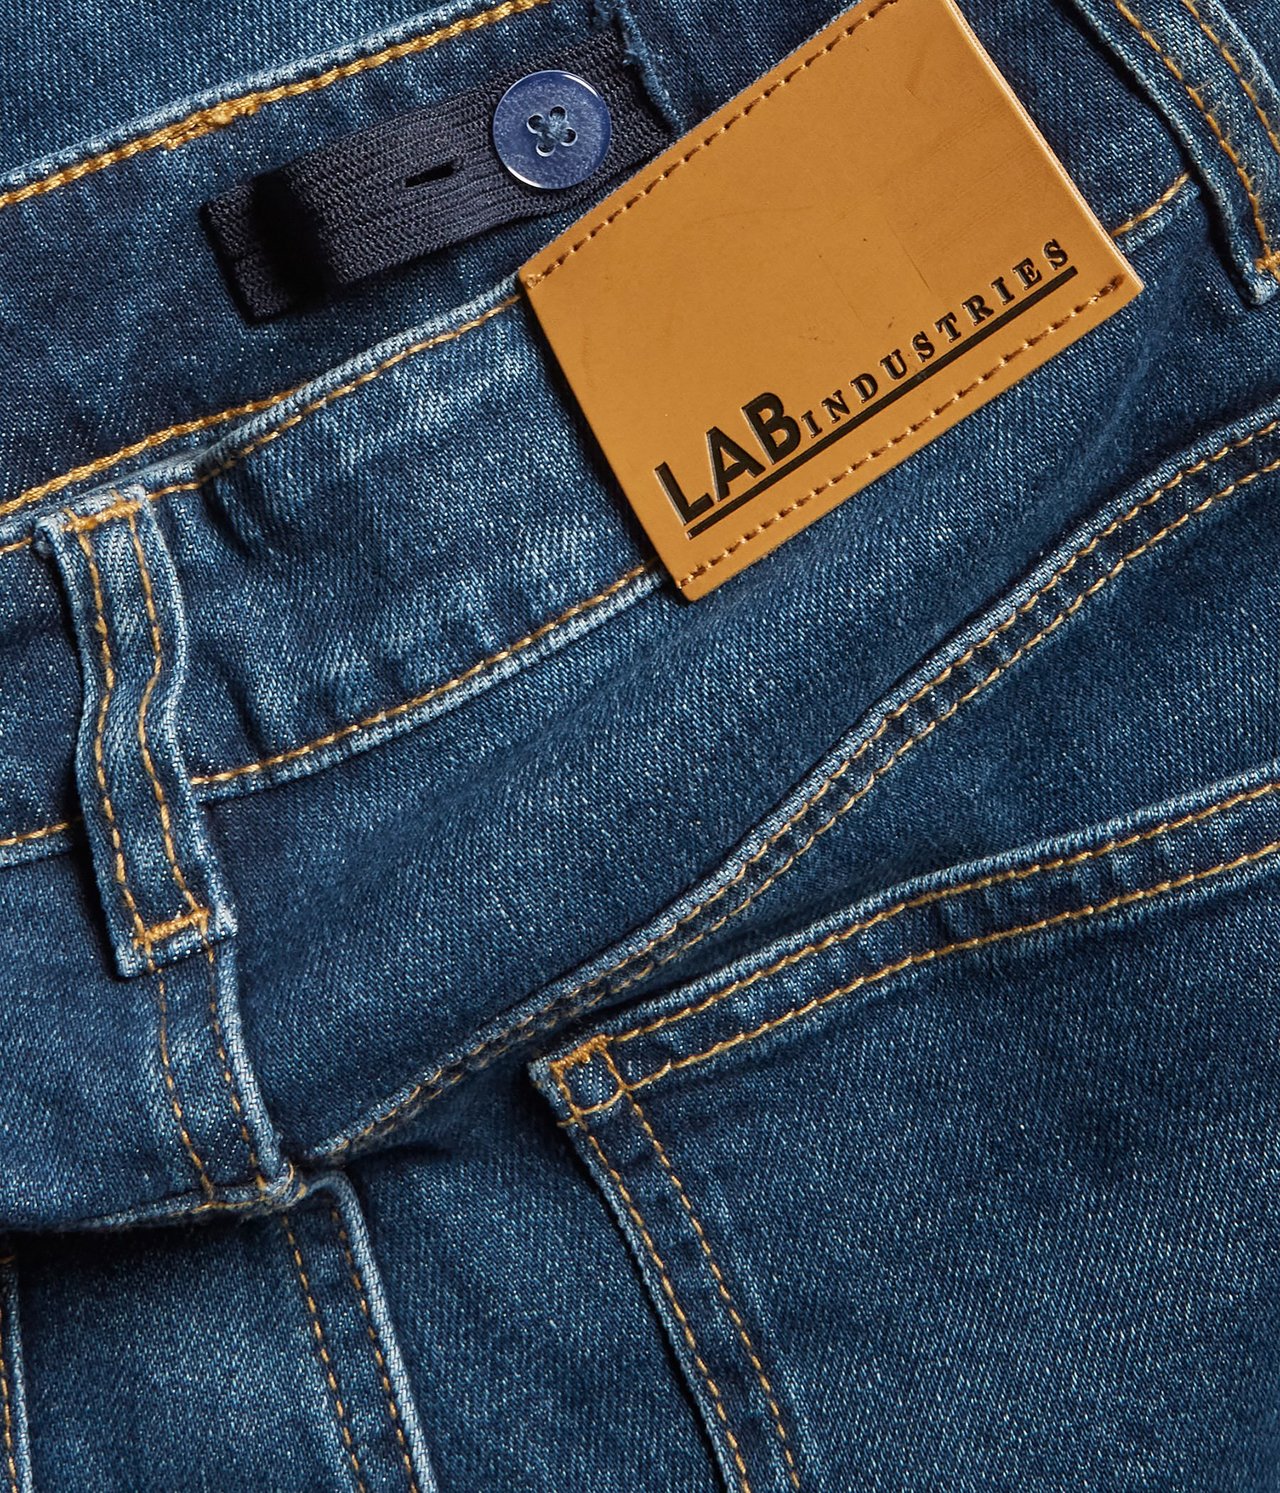 Retro jeans regular fit Tumma denimi - null - 1